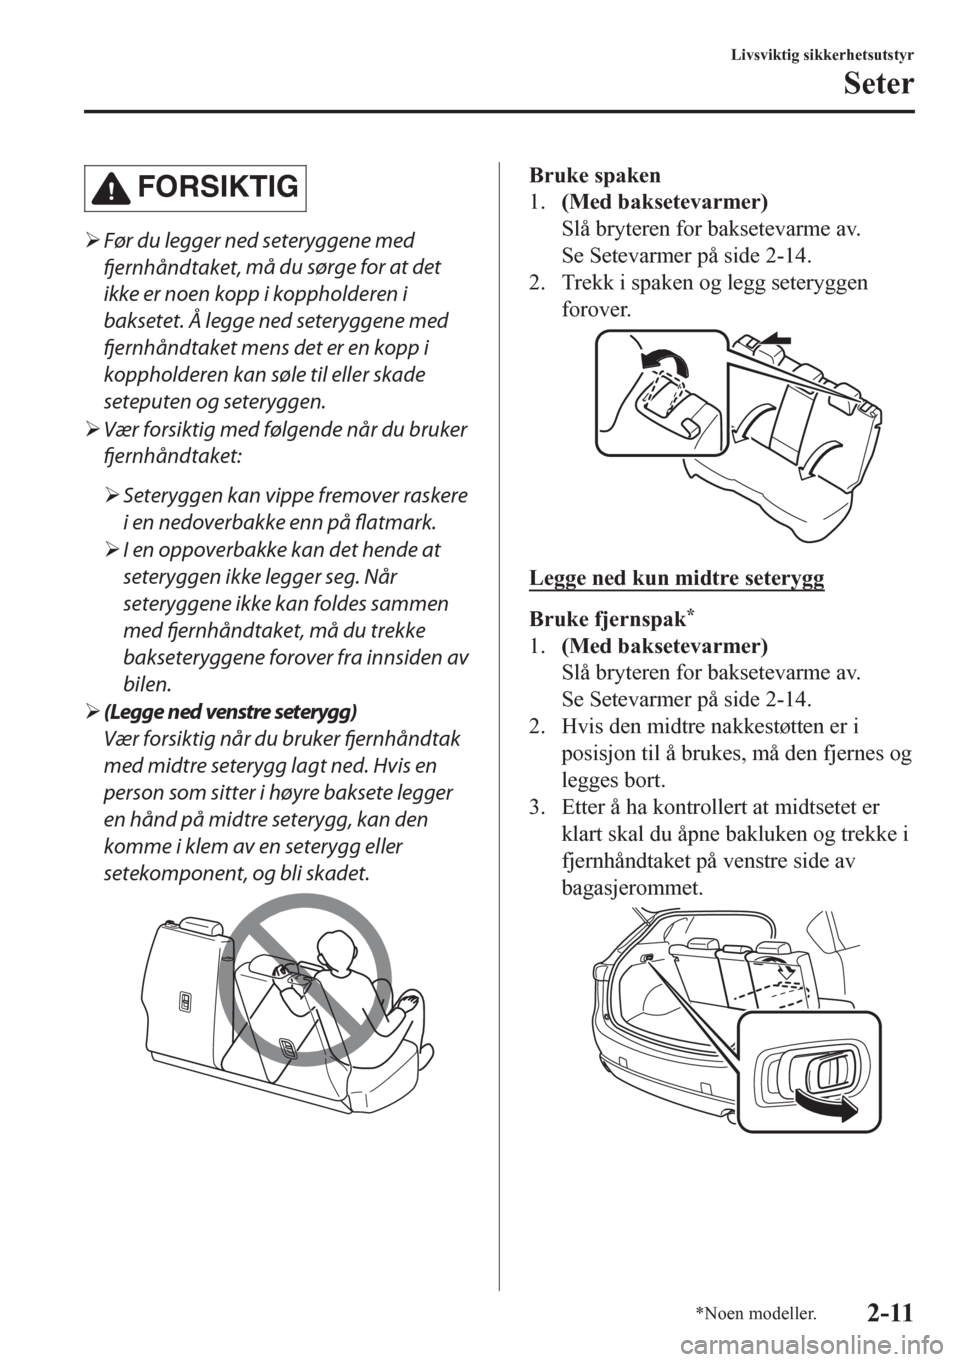 MAZDA MODEL CX-5 2018  Brukerhåndbok (in Norwegian) FORSIKTIG
�¾Før du legger ned seteryggene med
fjernhåndtaket, må du sørge for at det
ikke er noen kopp i koppholderen i
baksetet. Å legge ned seteryggene med
fjernhåndtaket mens det er en kopp 